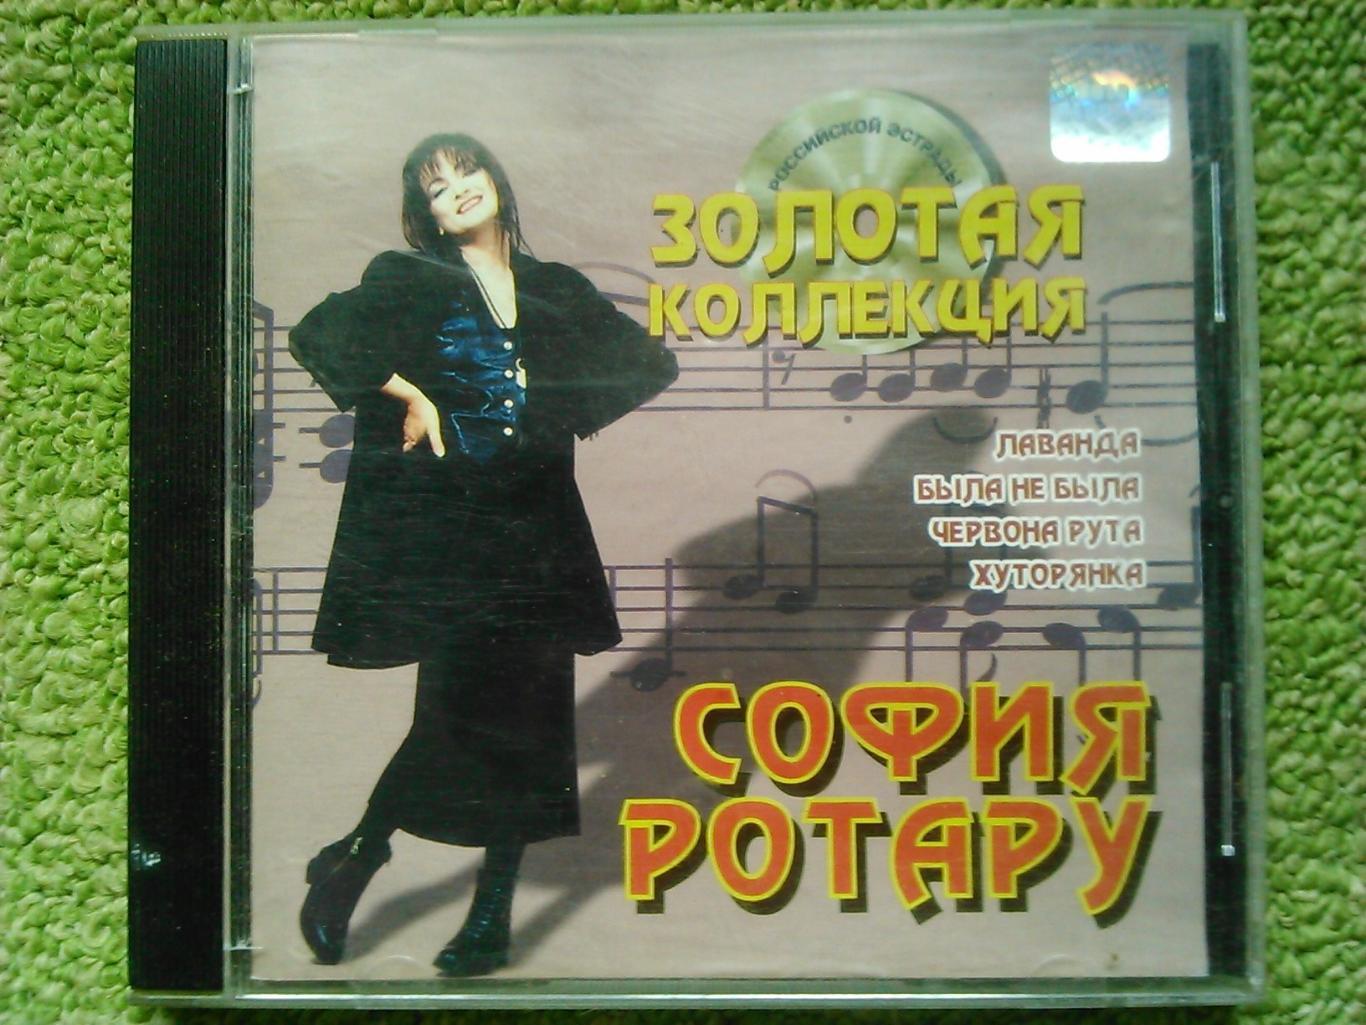 Аудио CD компакт диск София РОТАРУ -Золотая коллекция. Оптом скидки до 47%!